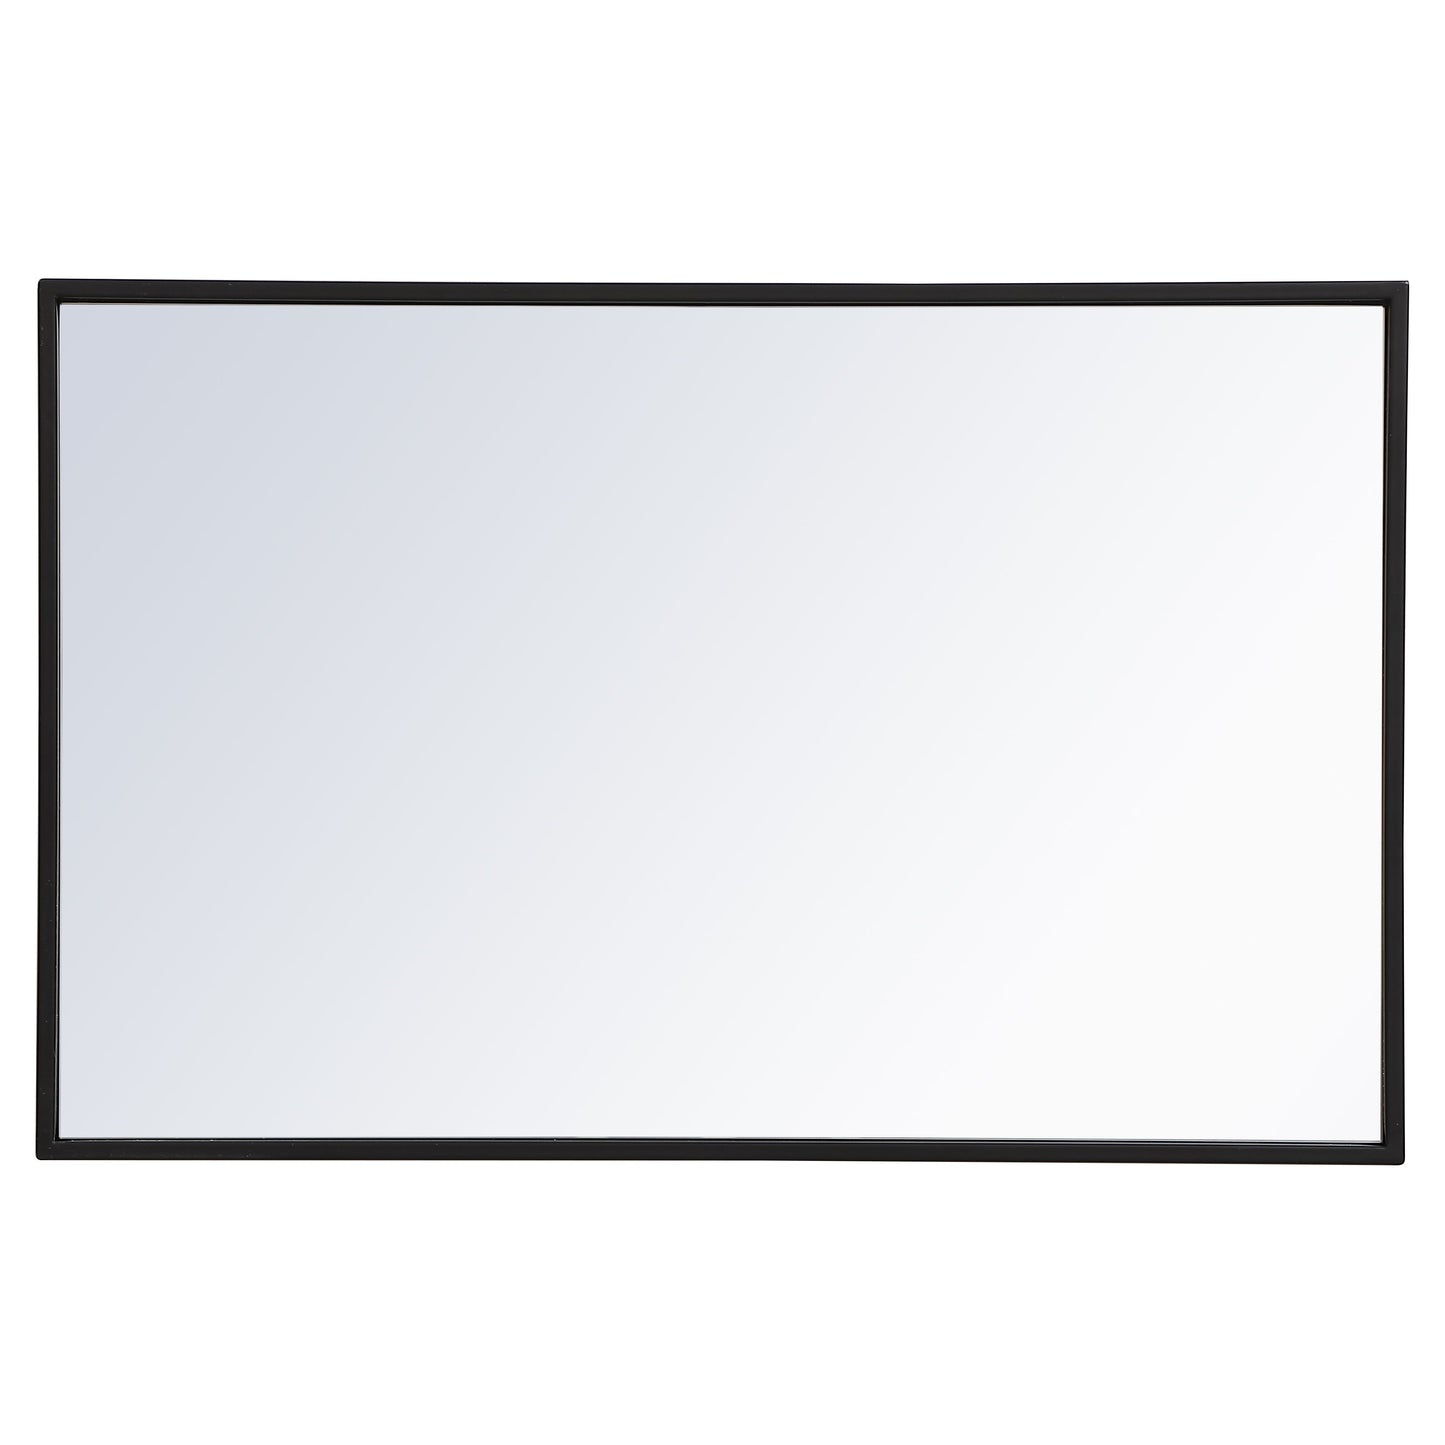 MR41828BK Monet 28" x 18" Metal Framed Rectangular Mirror in Black